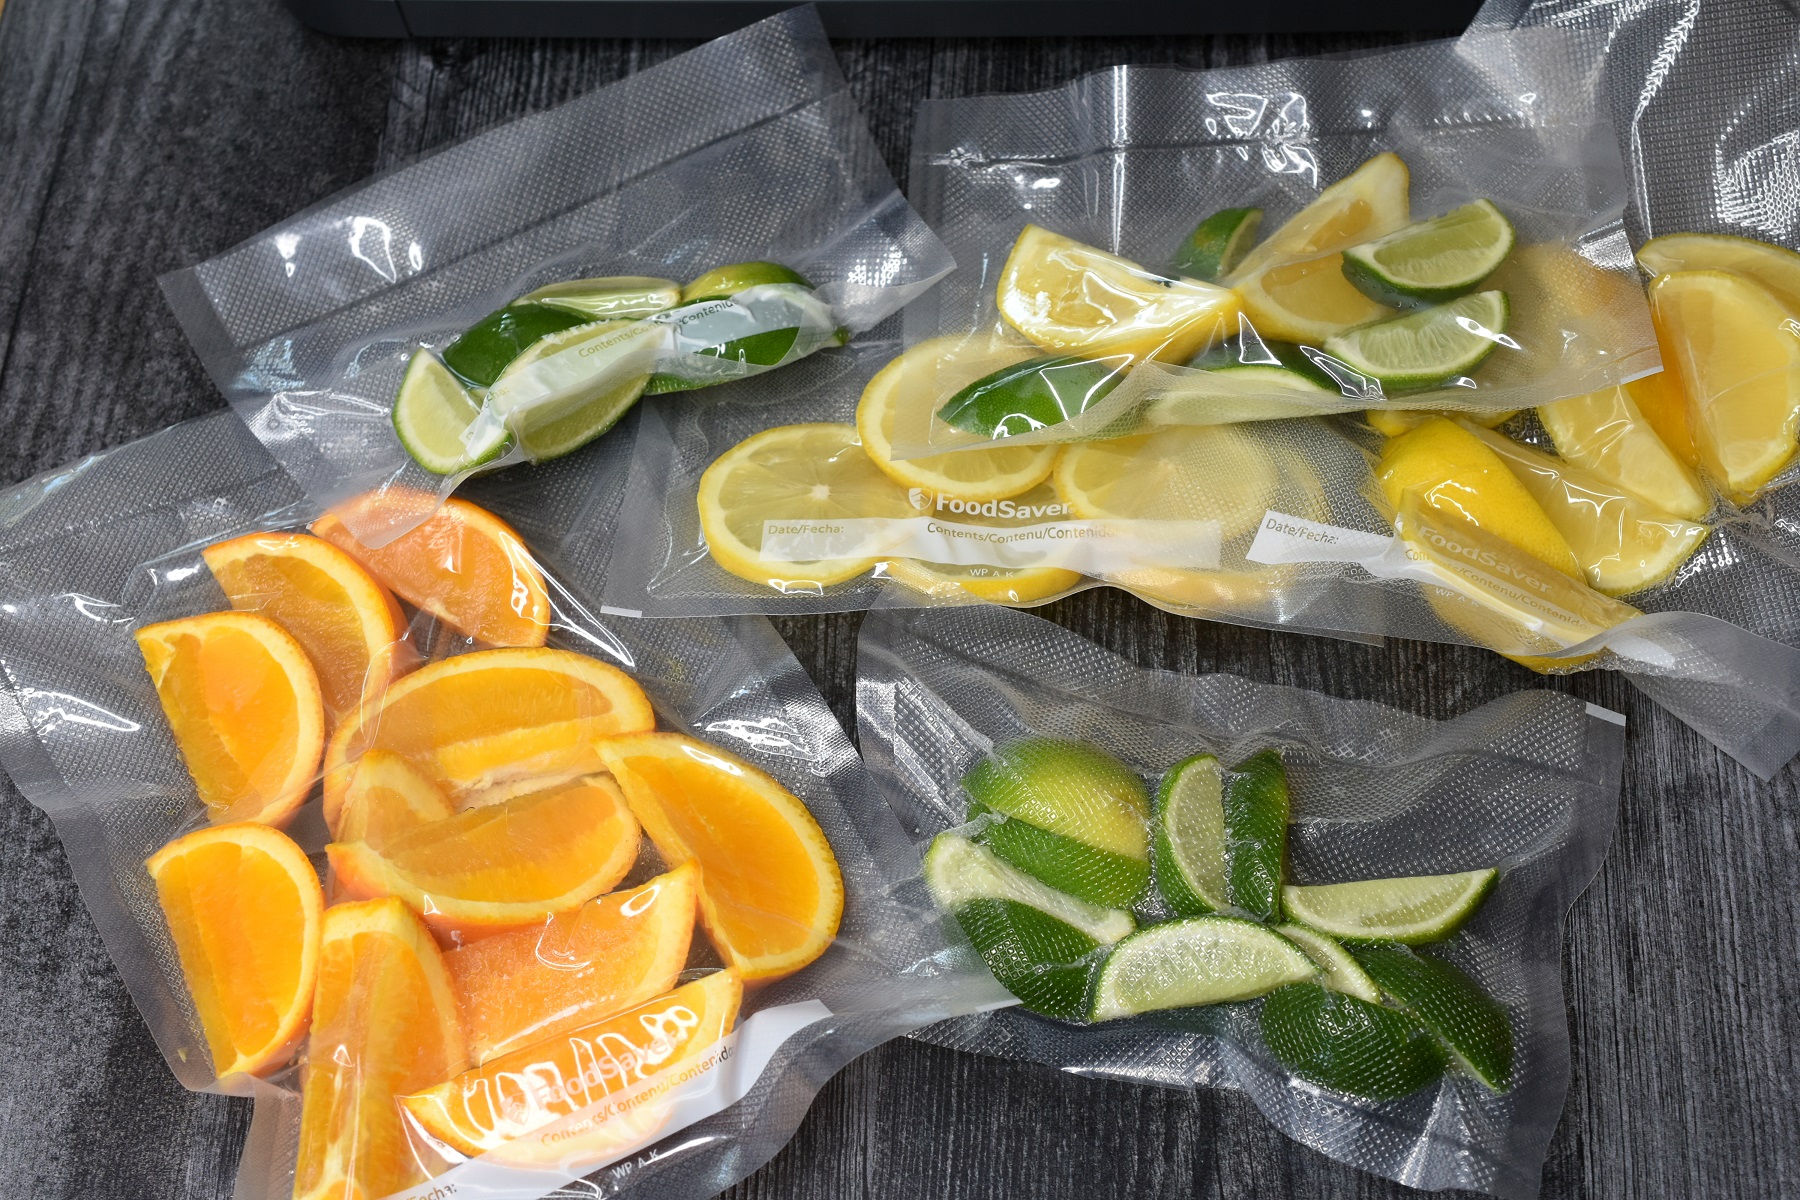 Can you freeze limes and lemons whole